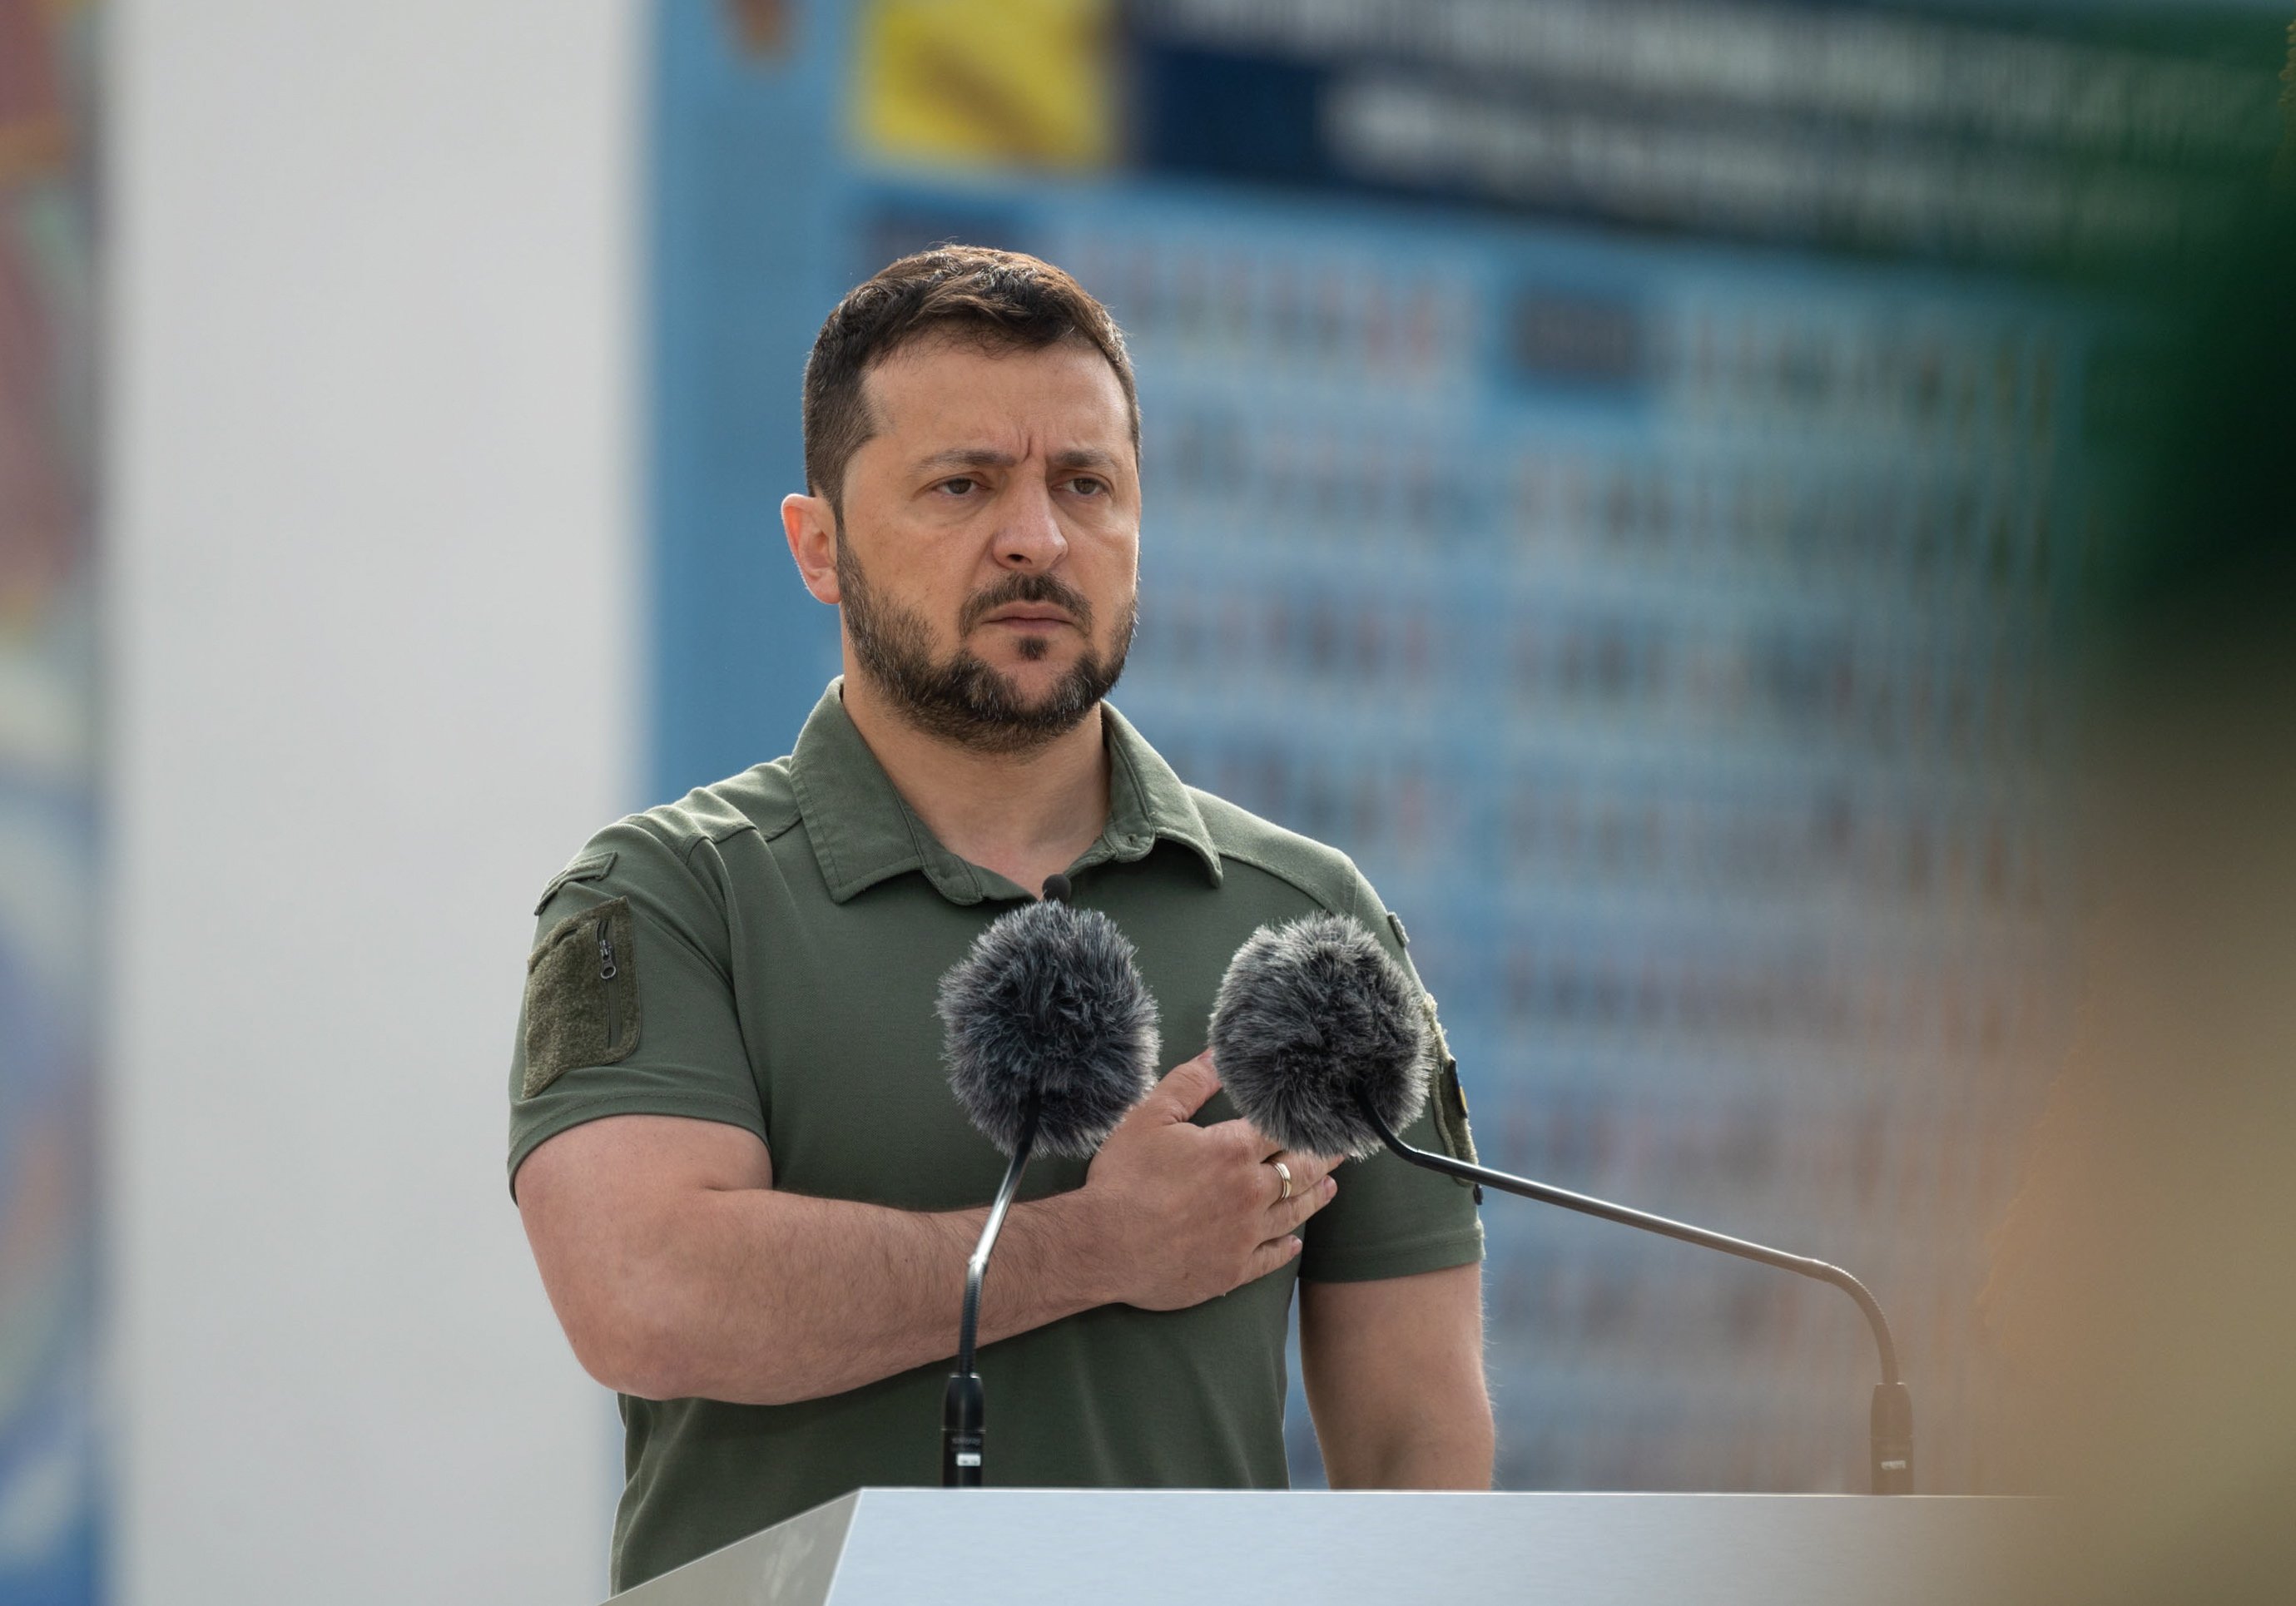 Zelenski marca múscul: "Dia poderós per a Ucraïna"